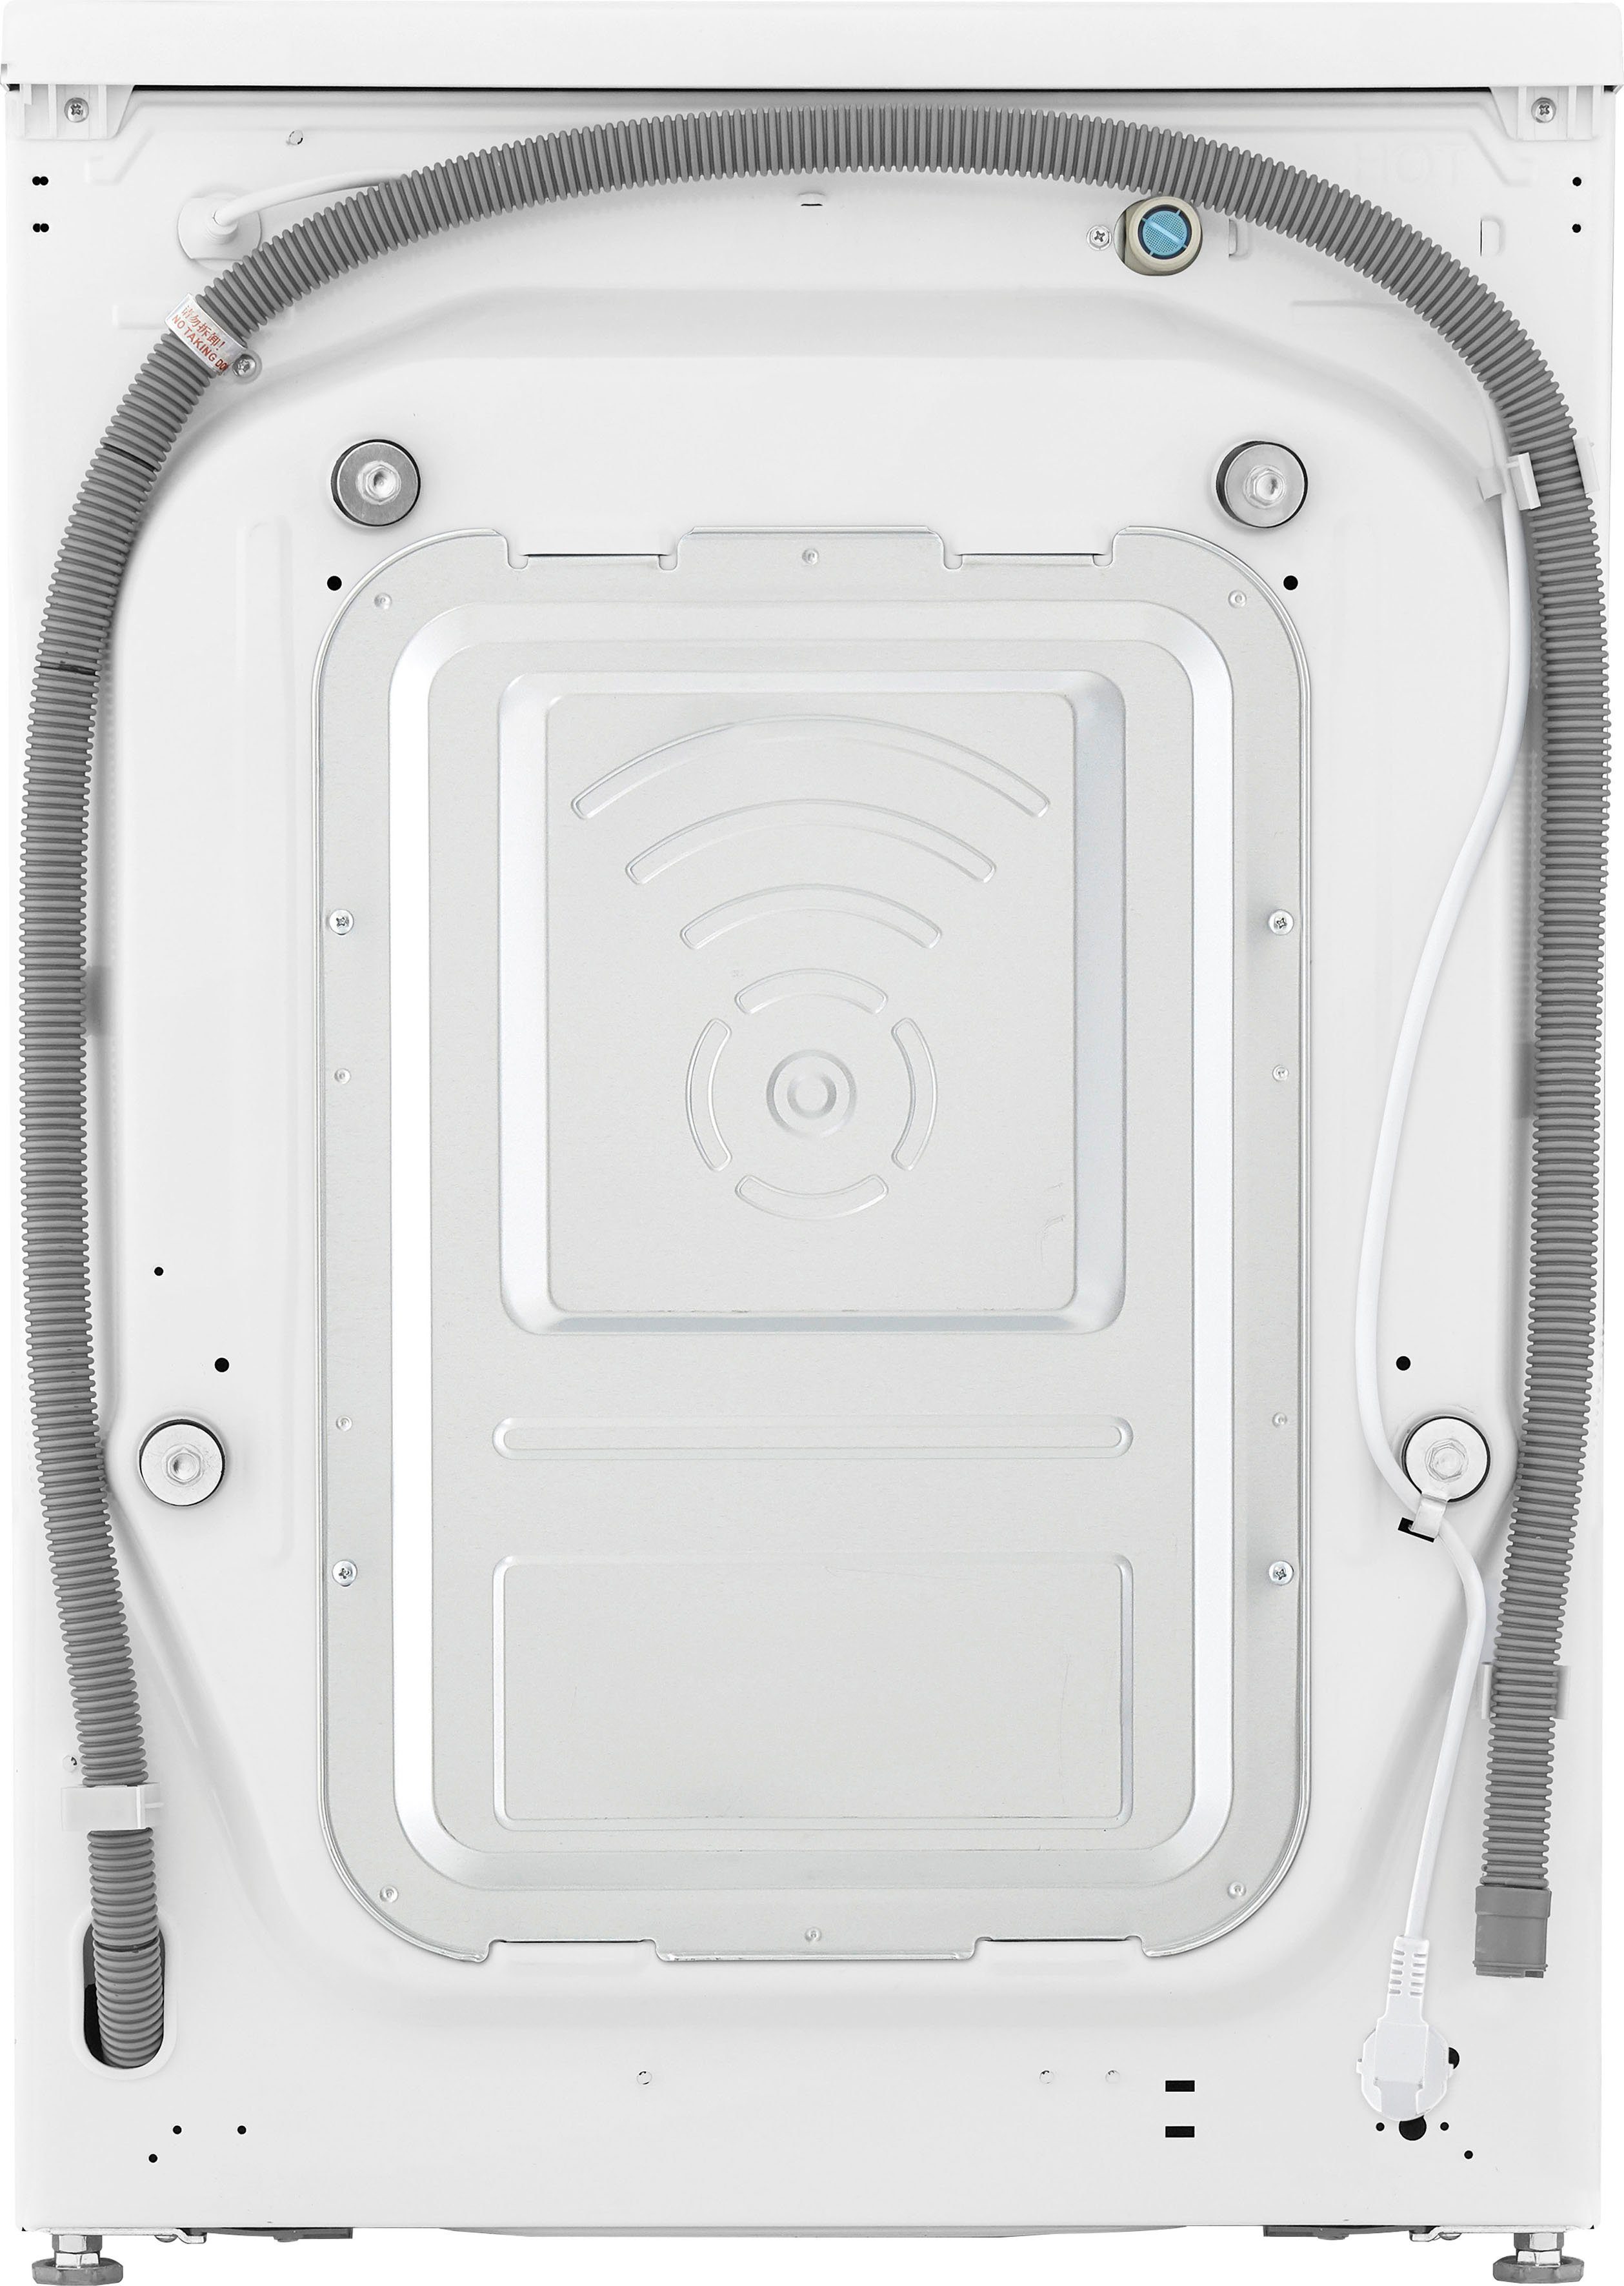 LG Waschmaschine F6WV710P1, 10,5 kg, 1600 U/min, Minuten 39 TurboWash® in nur - Waschen